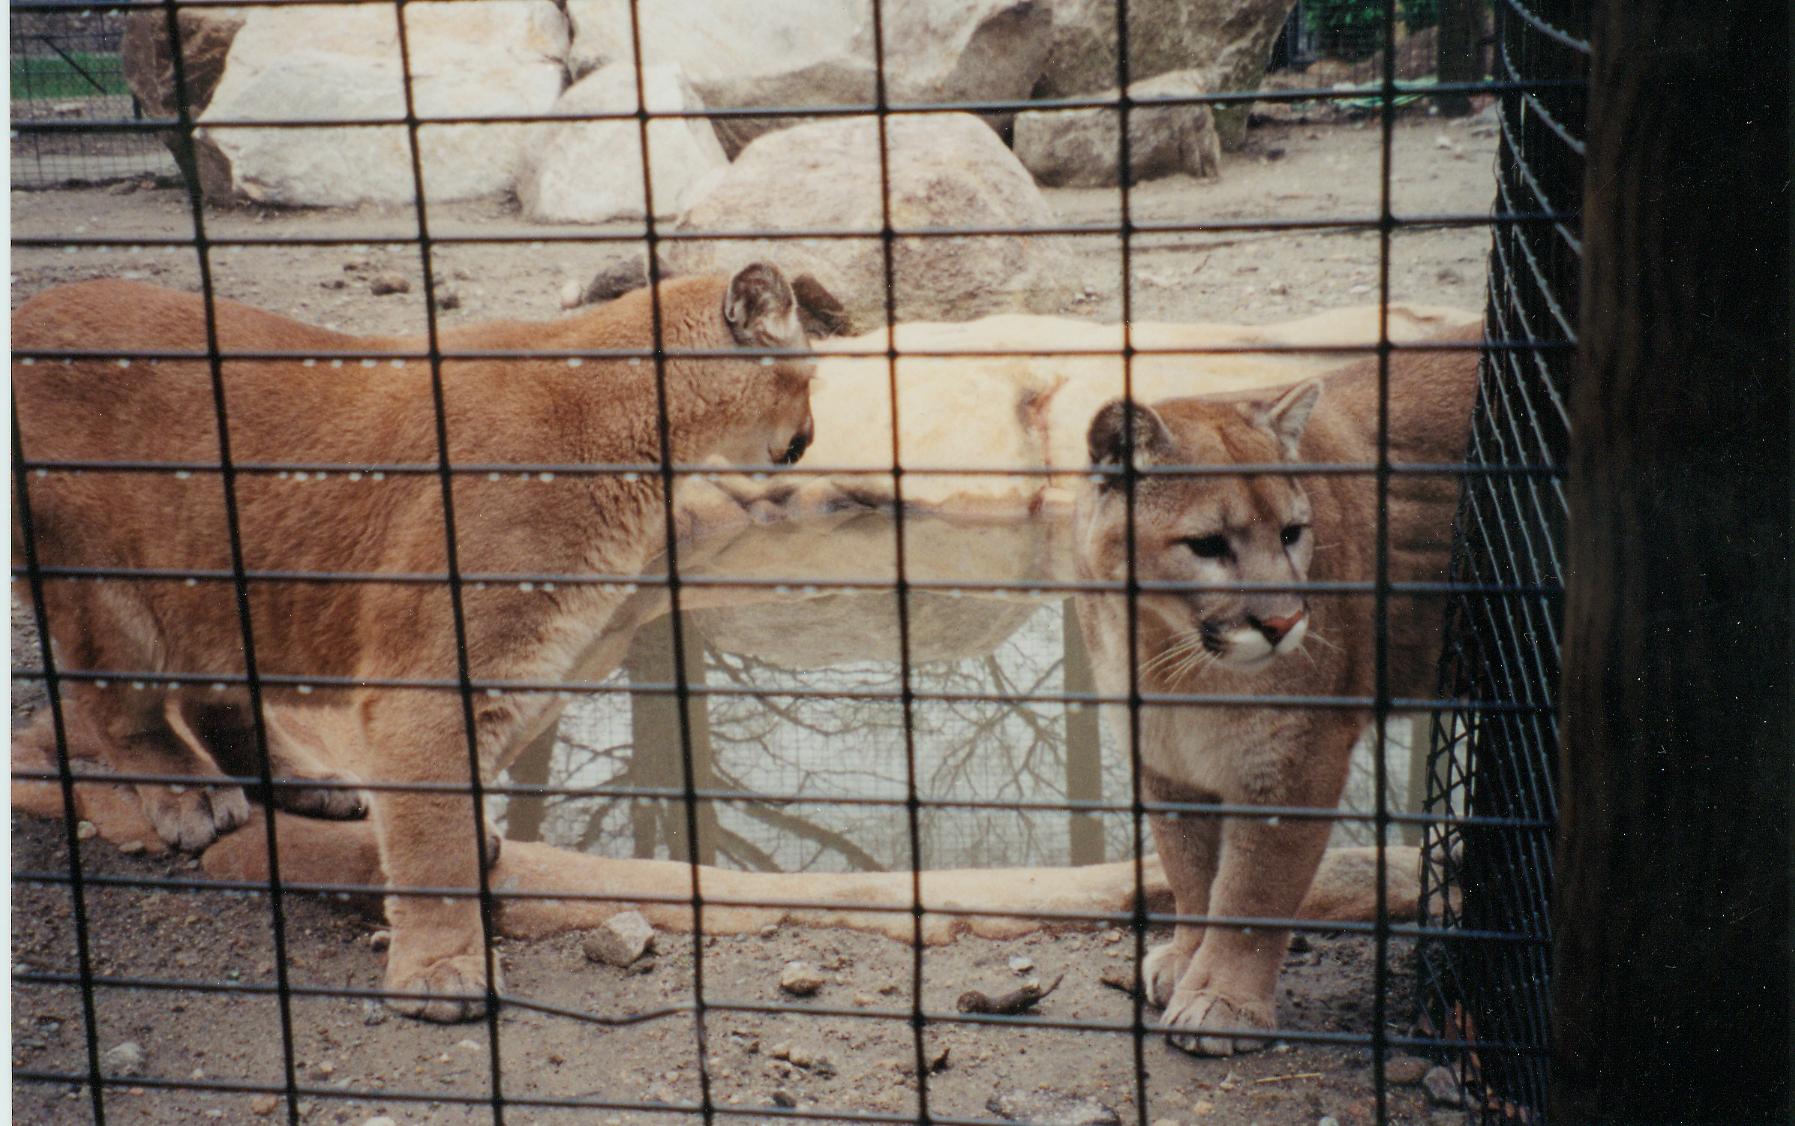 Cougar Exhibit